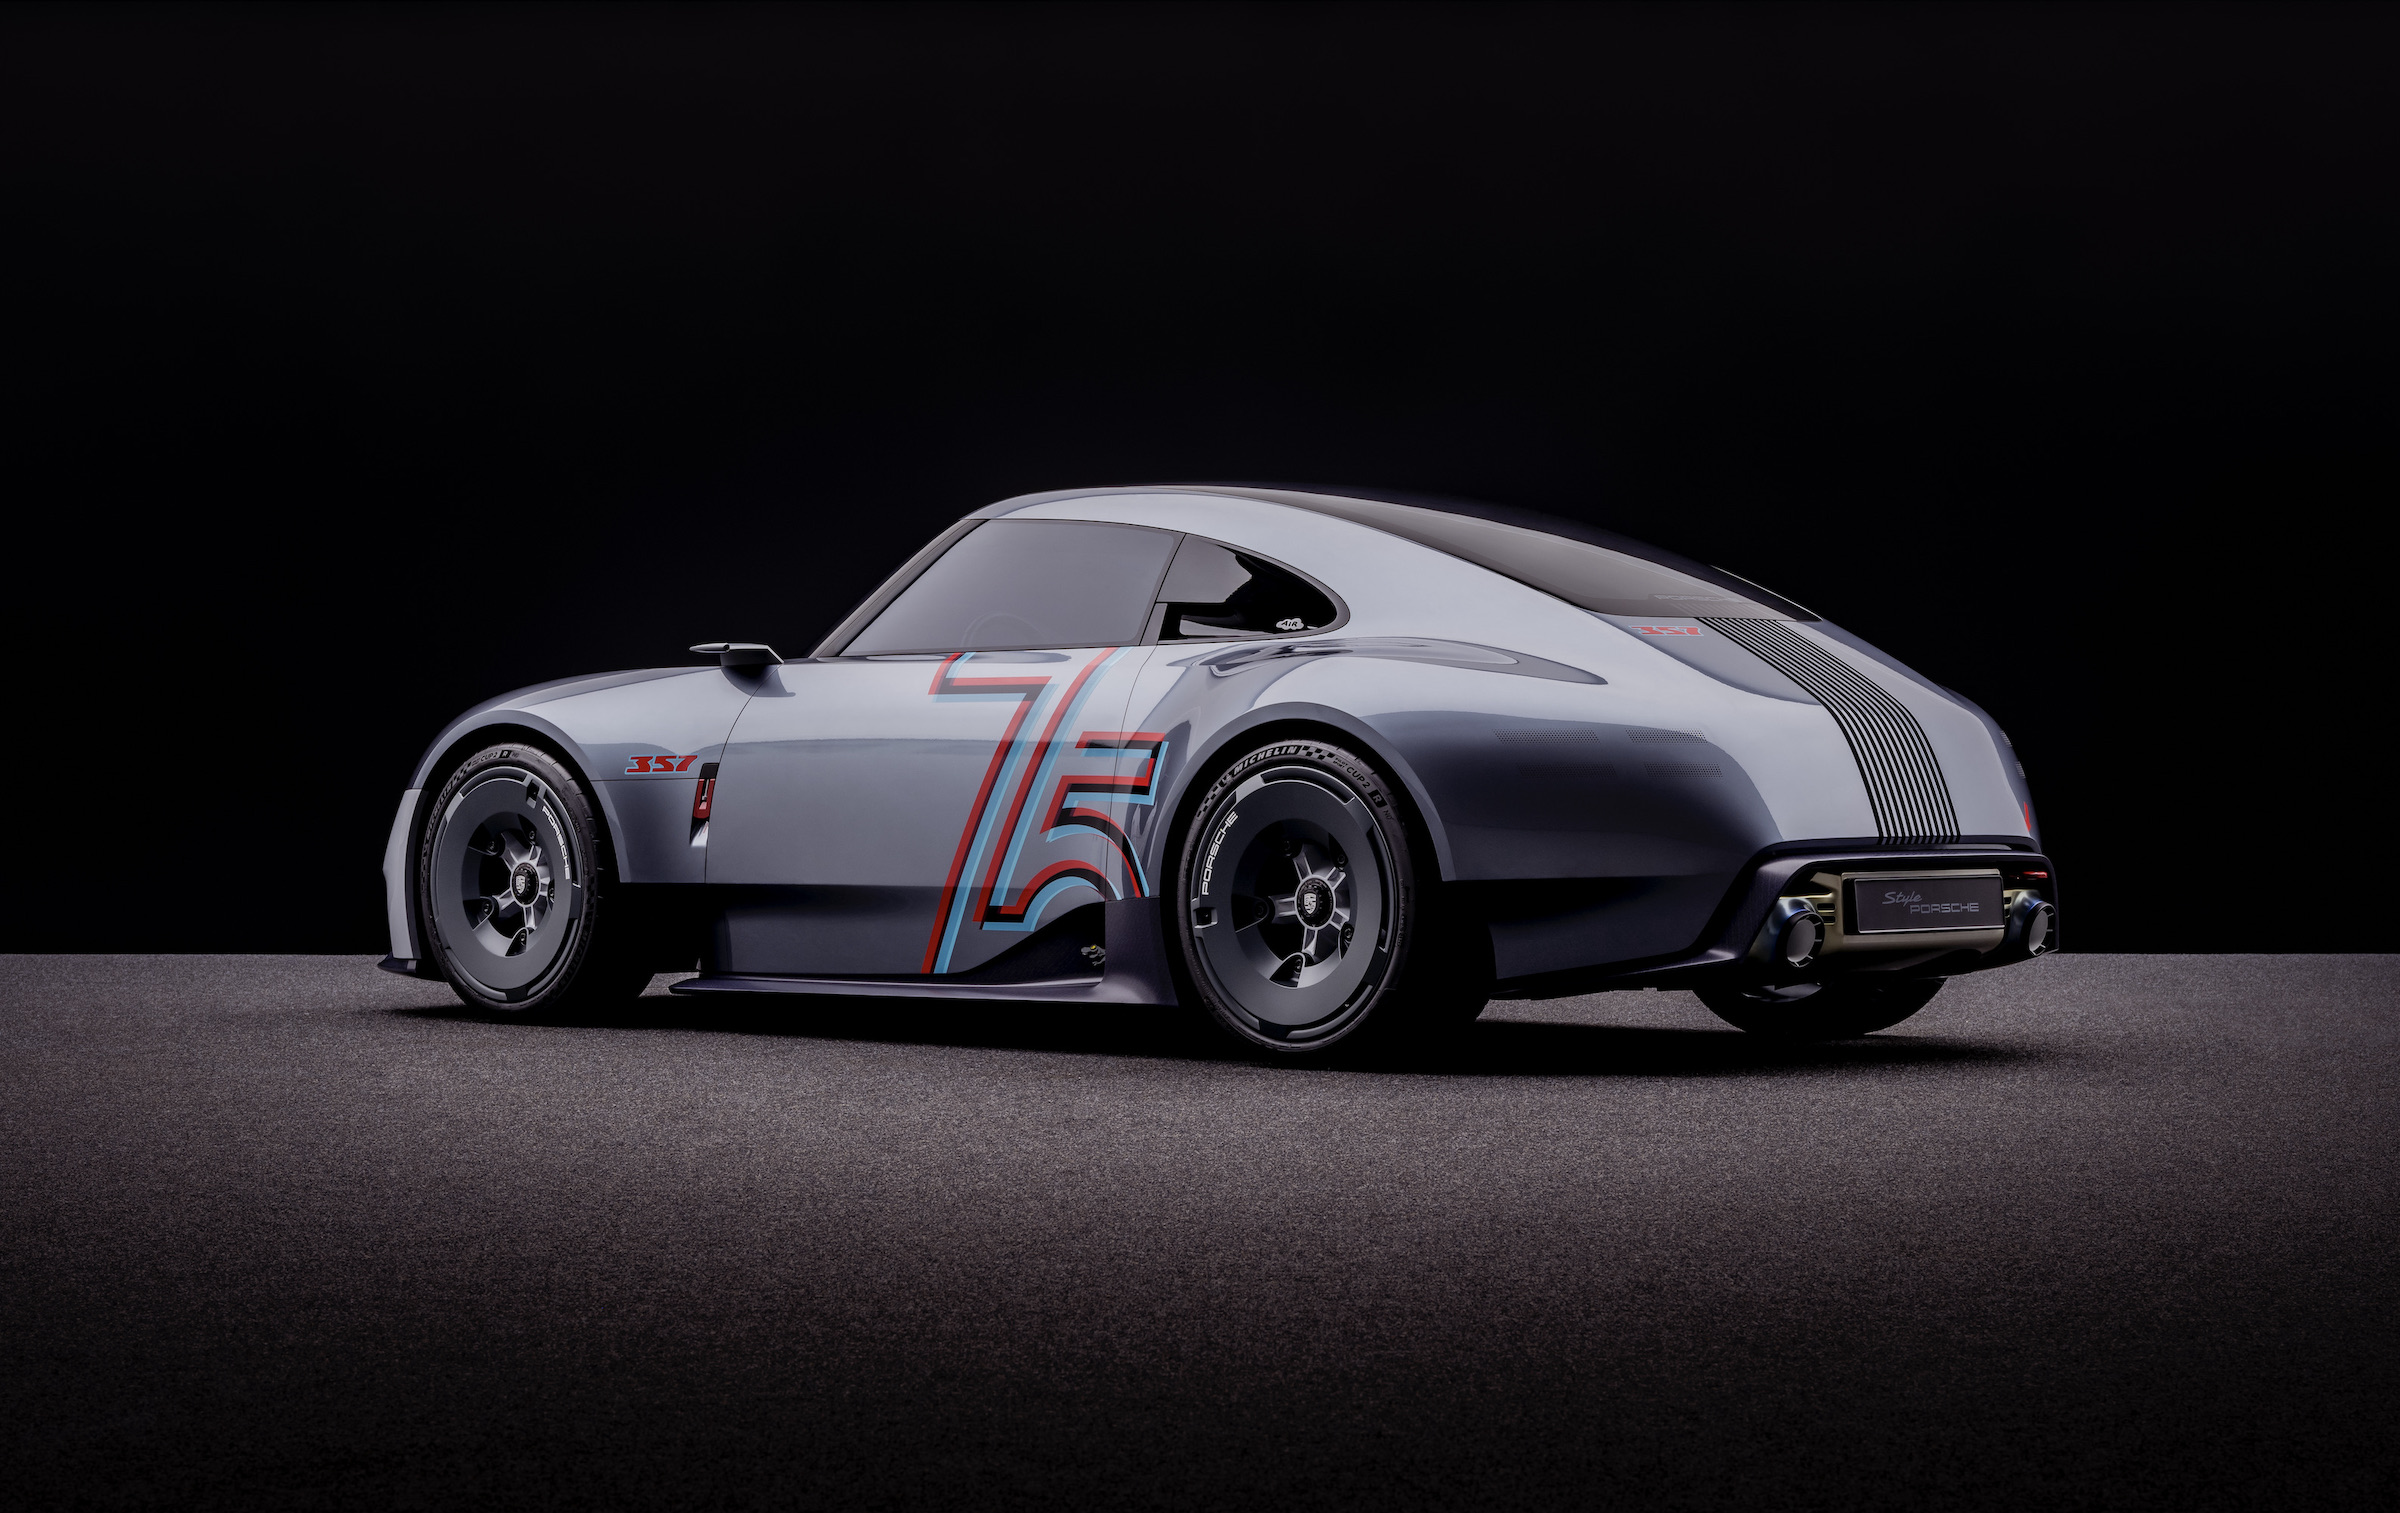 Porsche Vision 357 concept honours Ferry’s 356